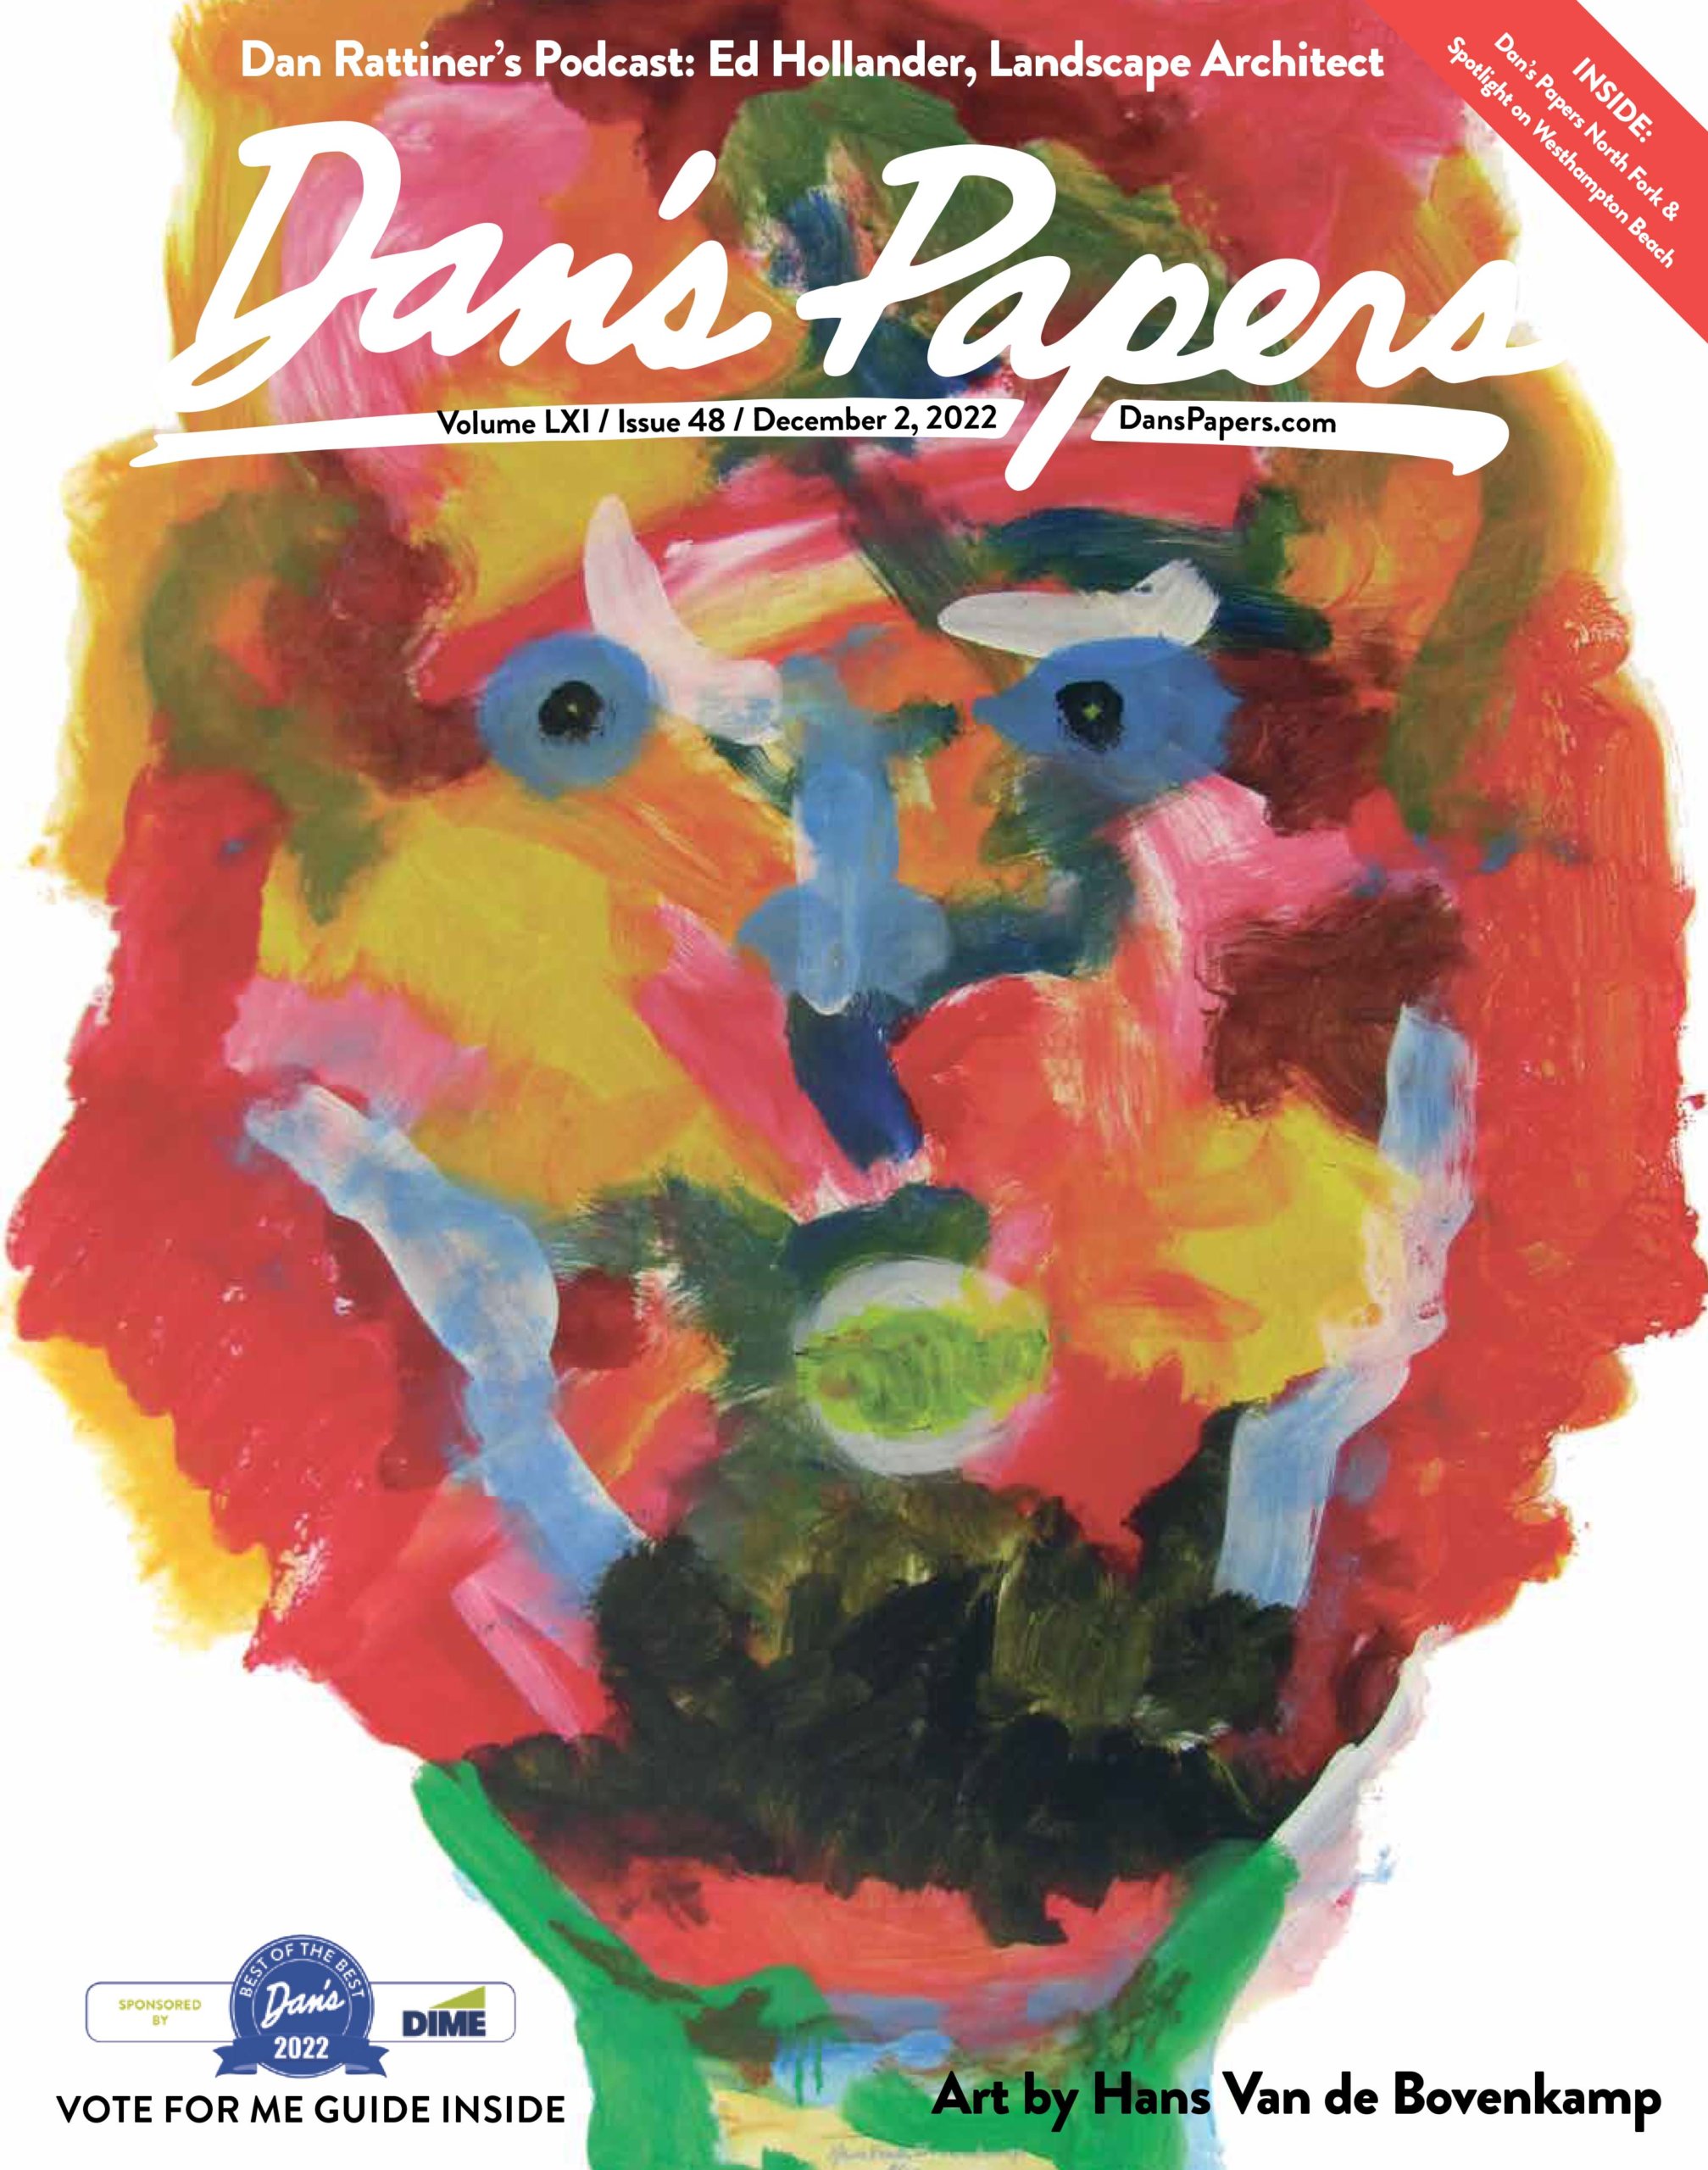 December 2, 2022 Dan's Papers cover art by Hans Van de Bovenkamp